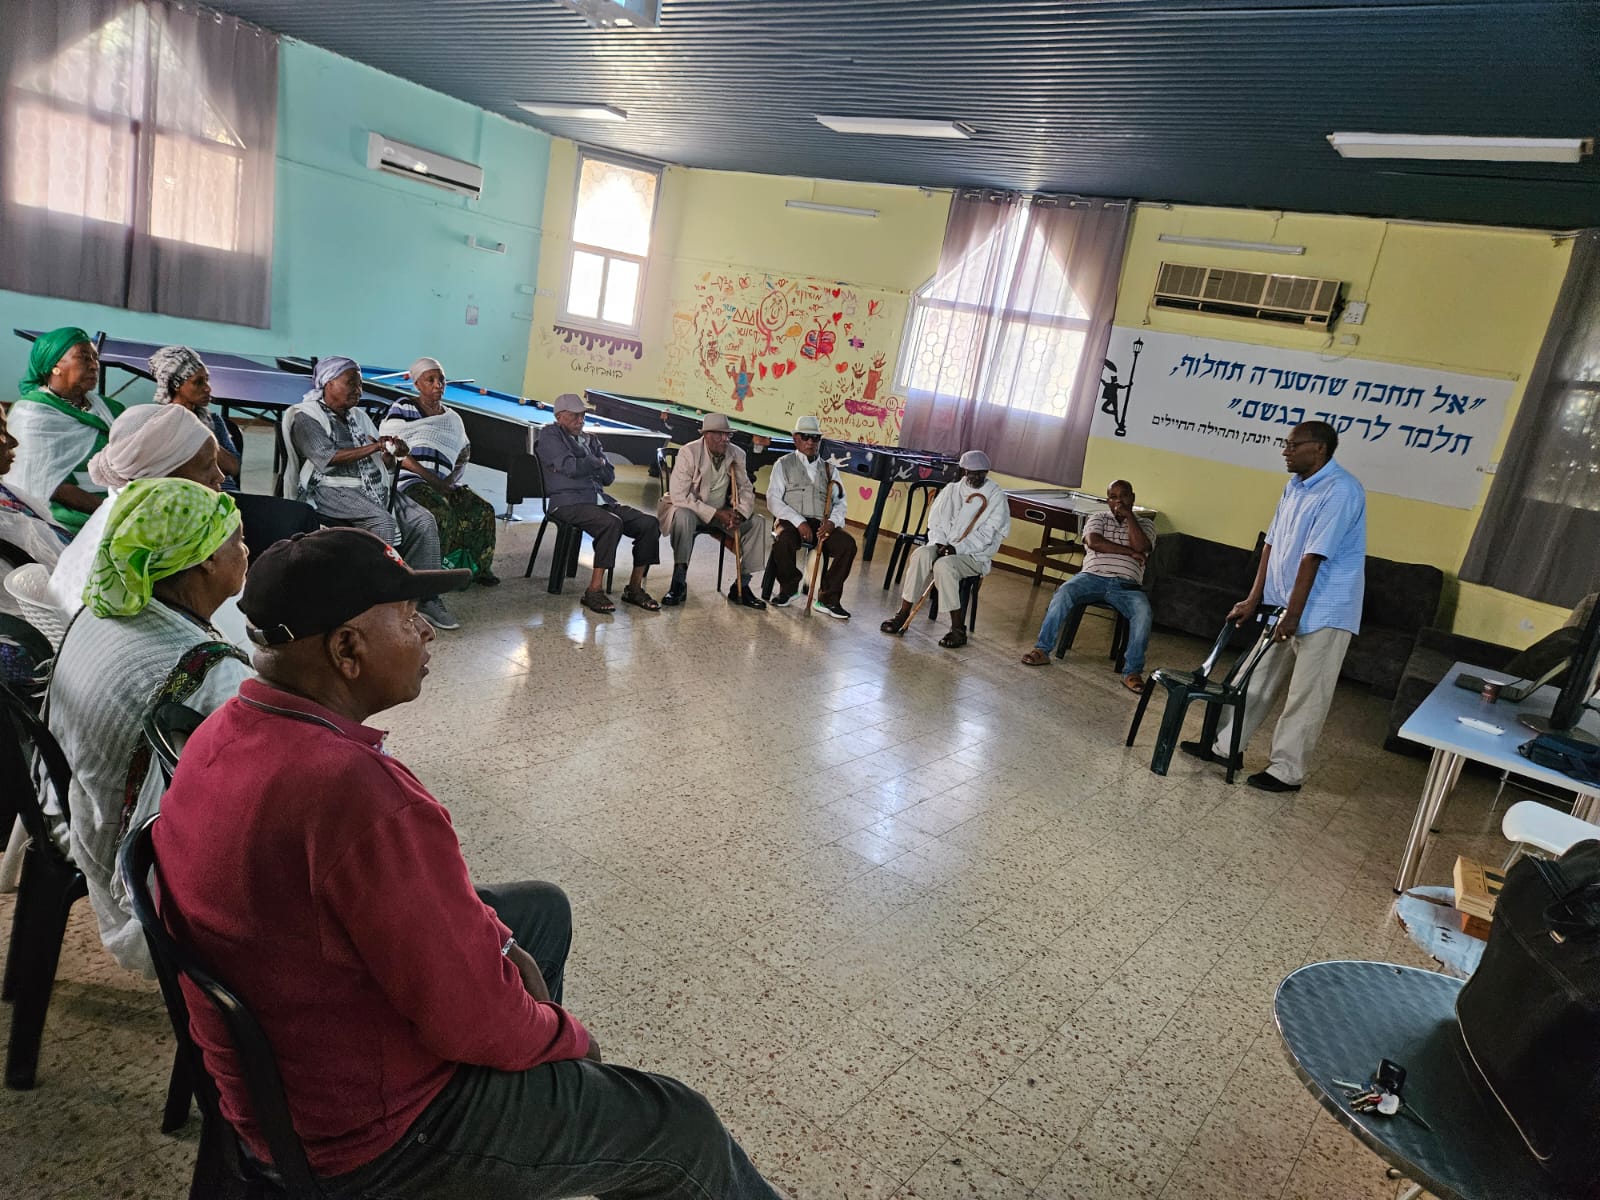 שת"פ קהילתי: הקהילה האתיופית בחדרה מקבלת כלים ליצירת חוסן בתקופה מורכבת